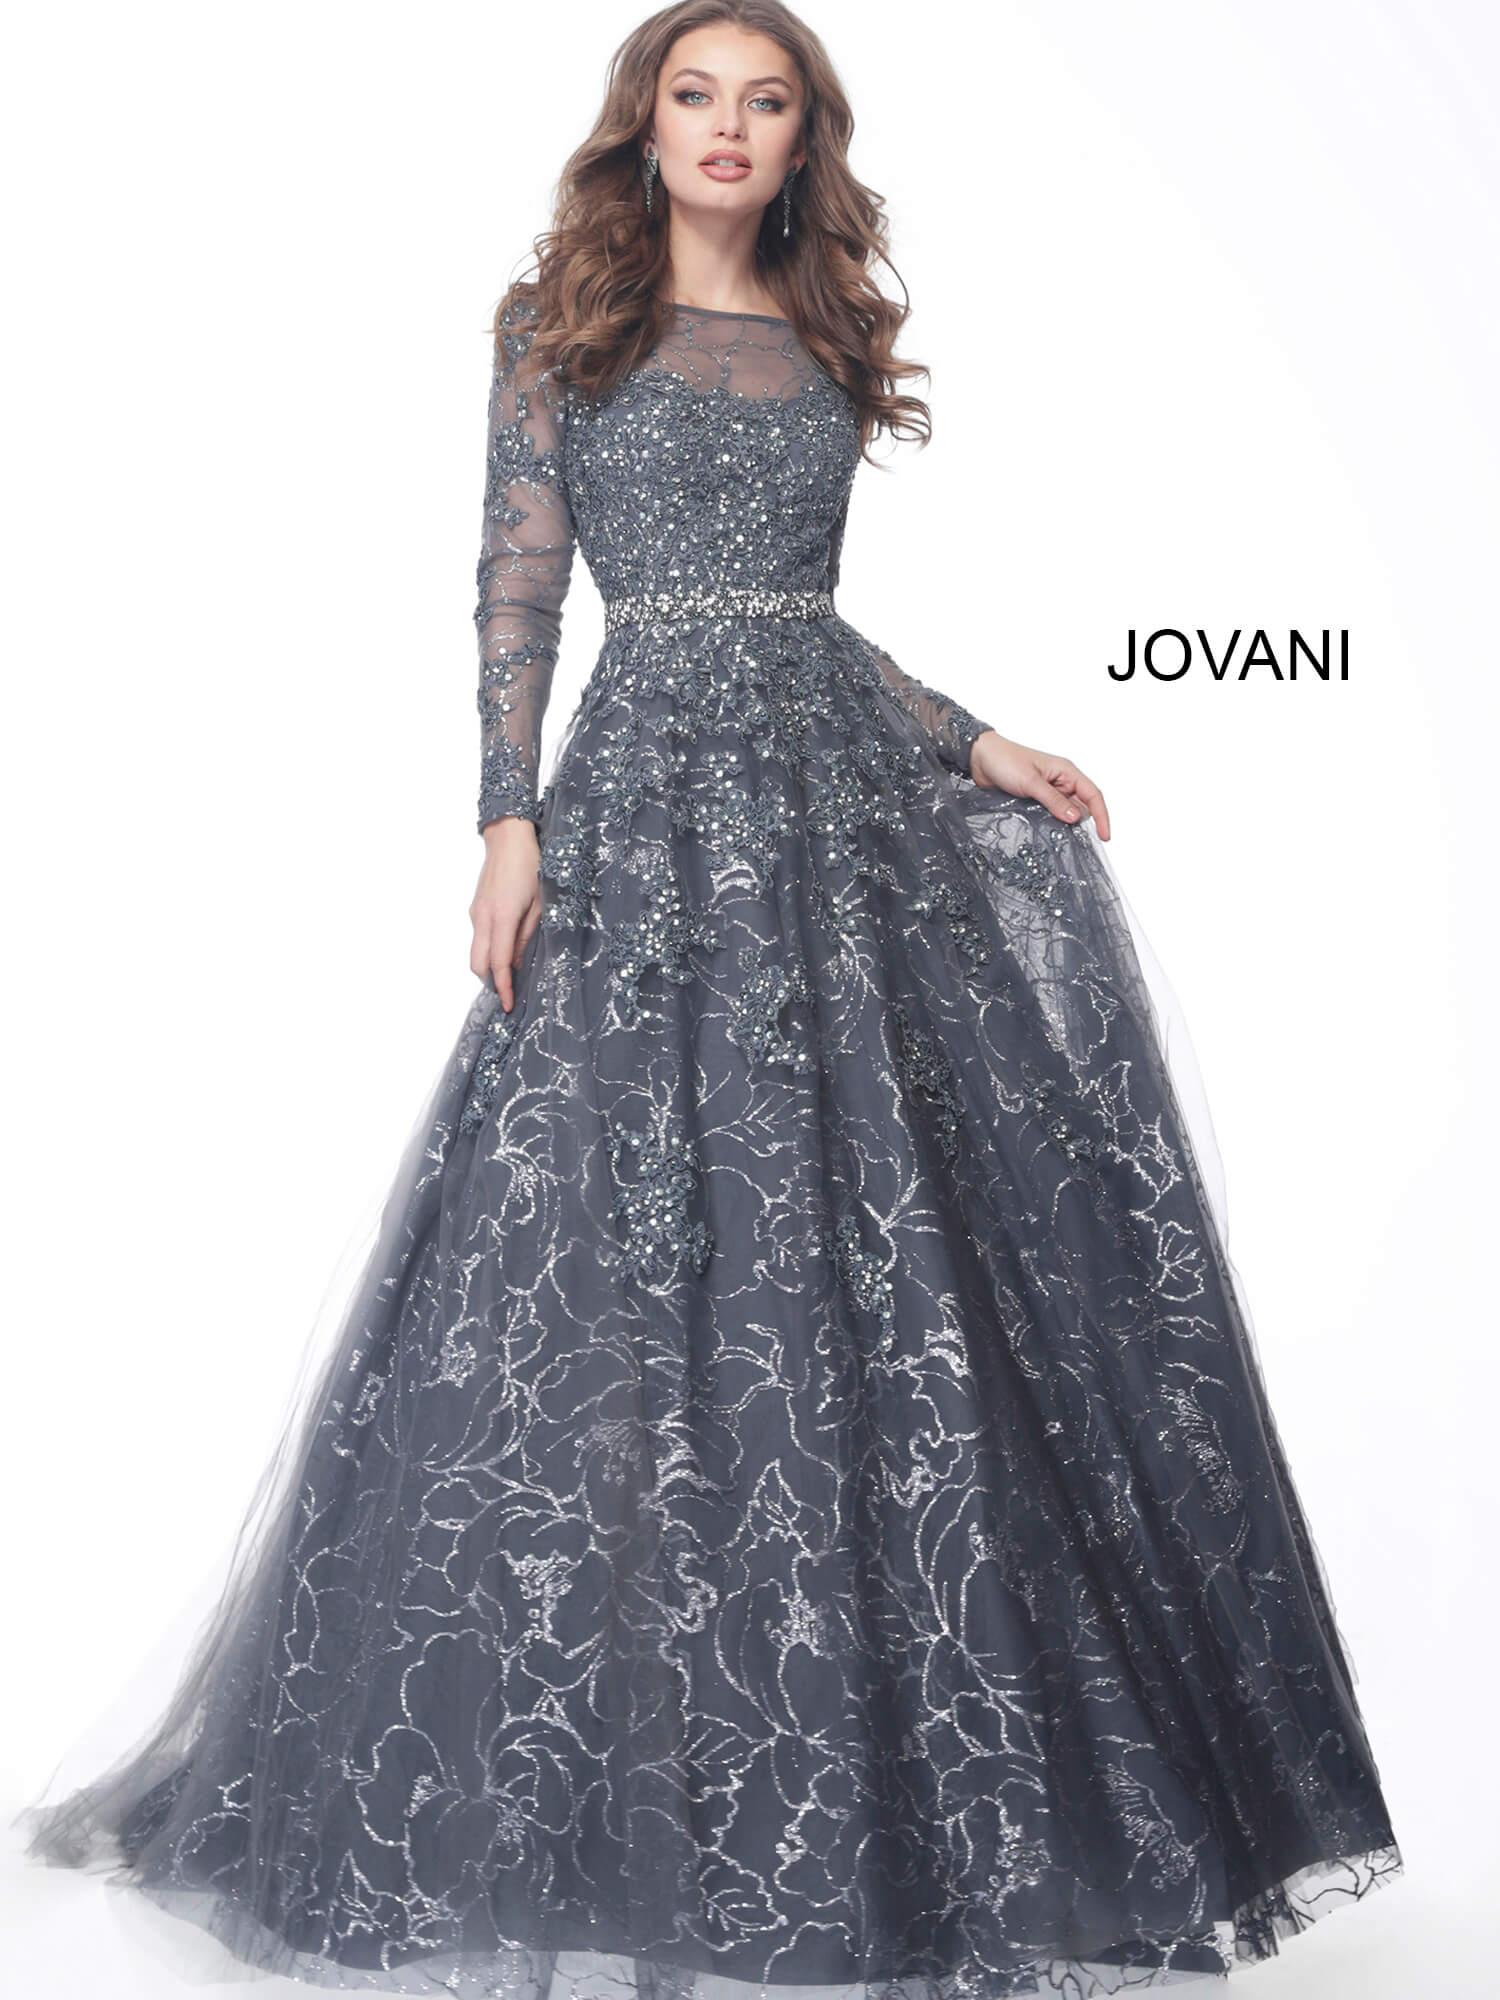 Jovani 51838 Embellished Long Sleeve Mother of the Bride Dress